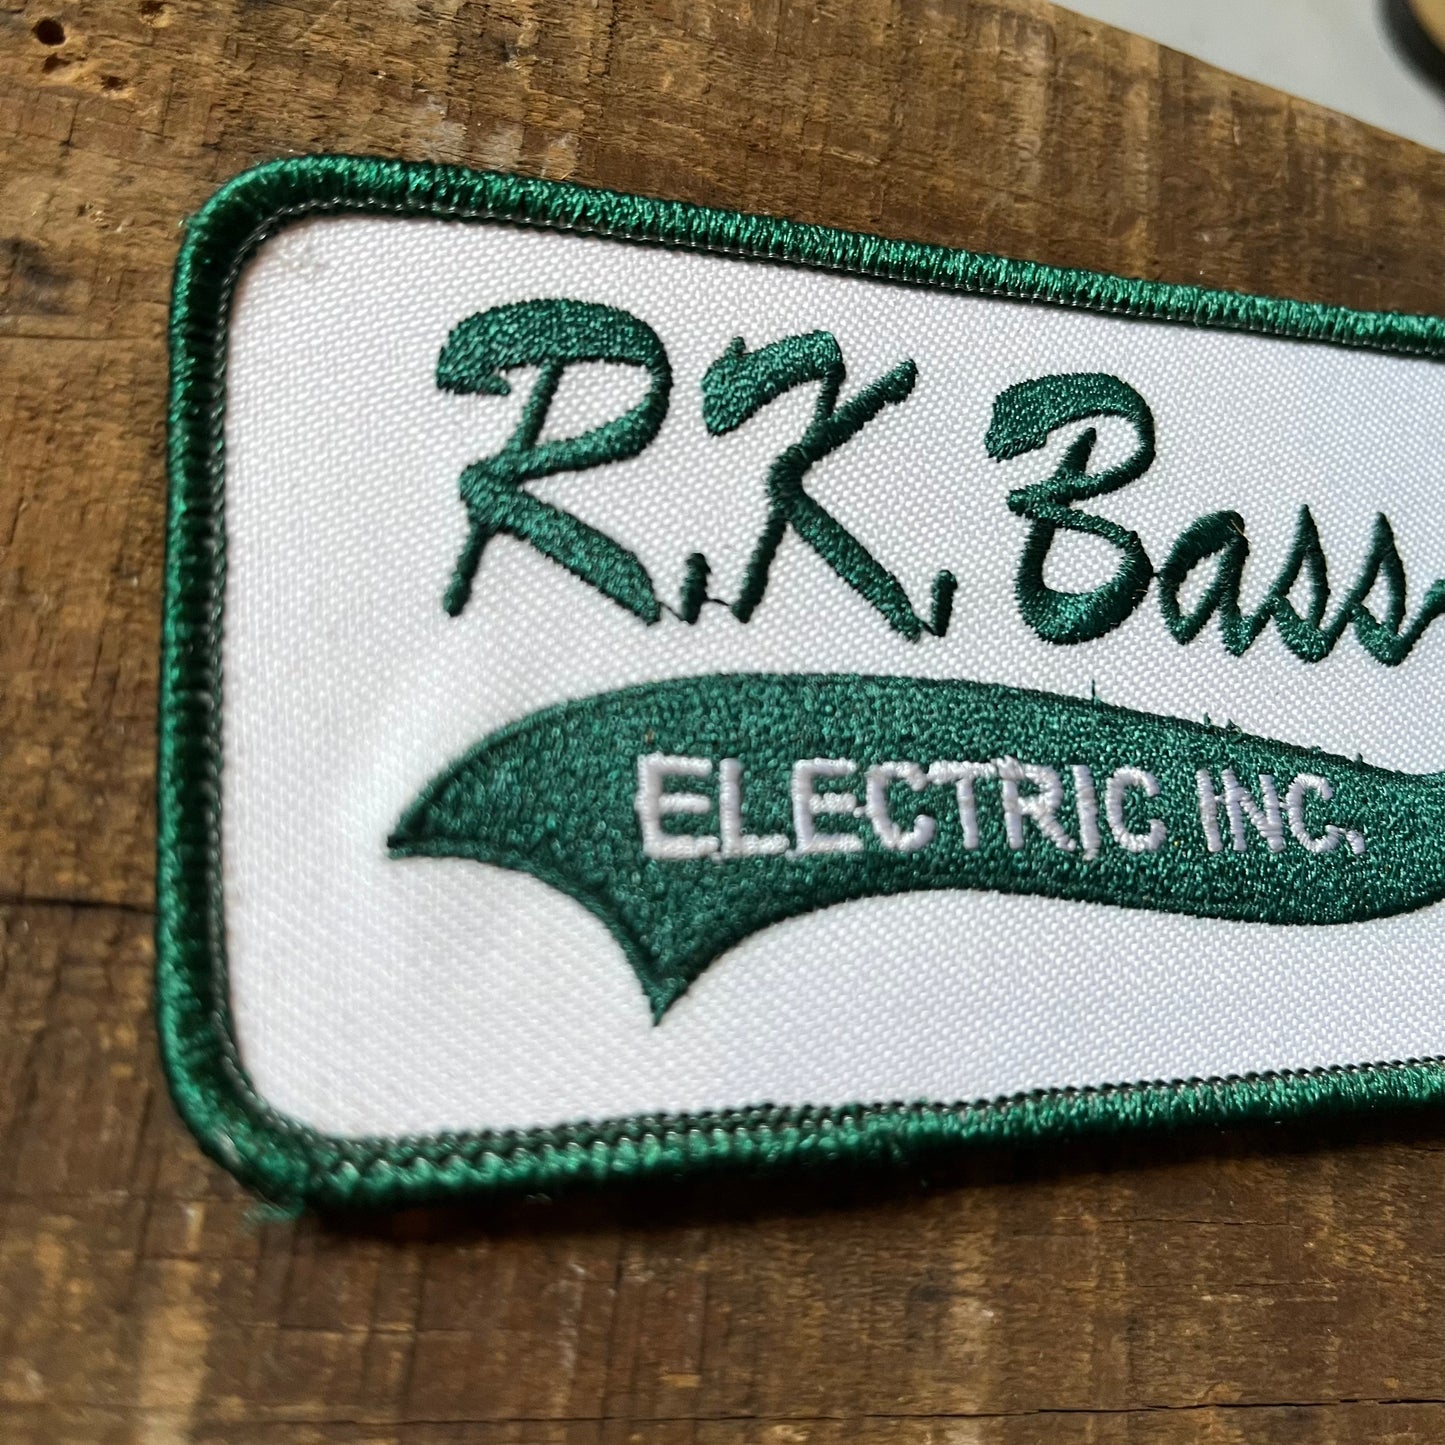 【USA 80’s】R.K.Bass Electric INC.  ワッペン